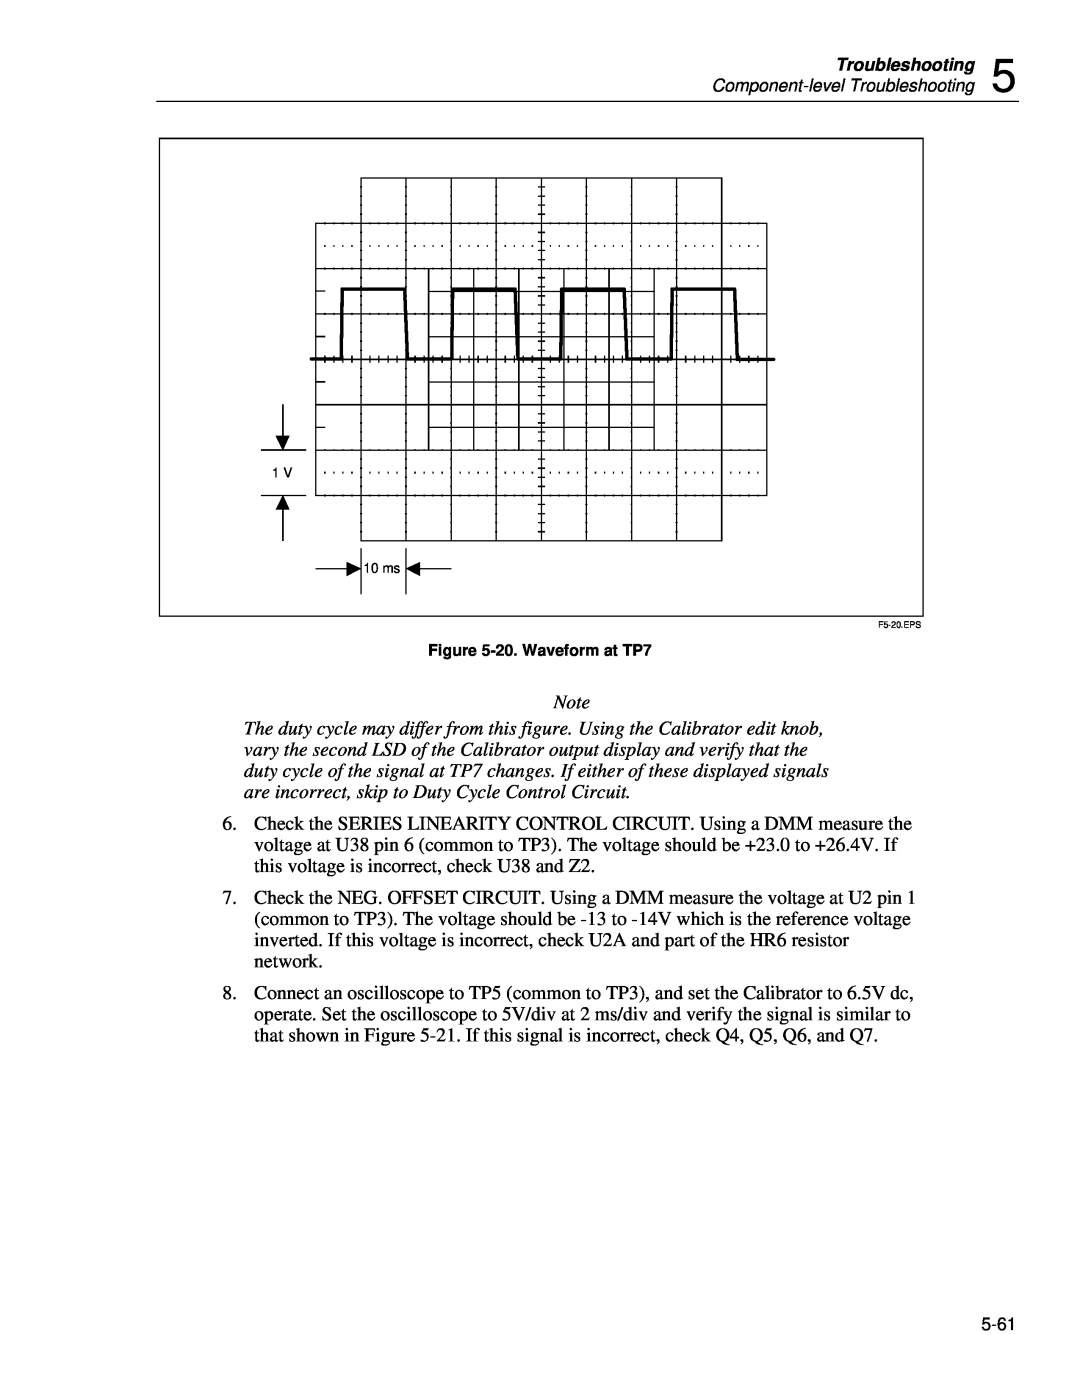 Fluke 5720A service manual 20. Waveform at TP7, F5-20.EPS 